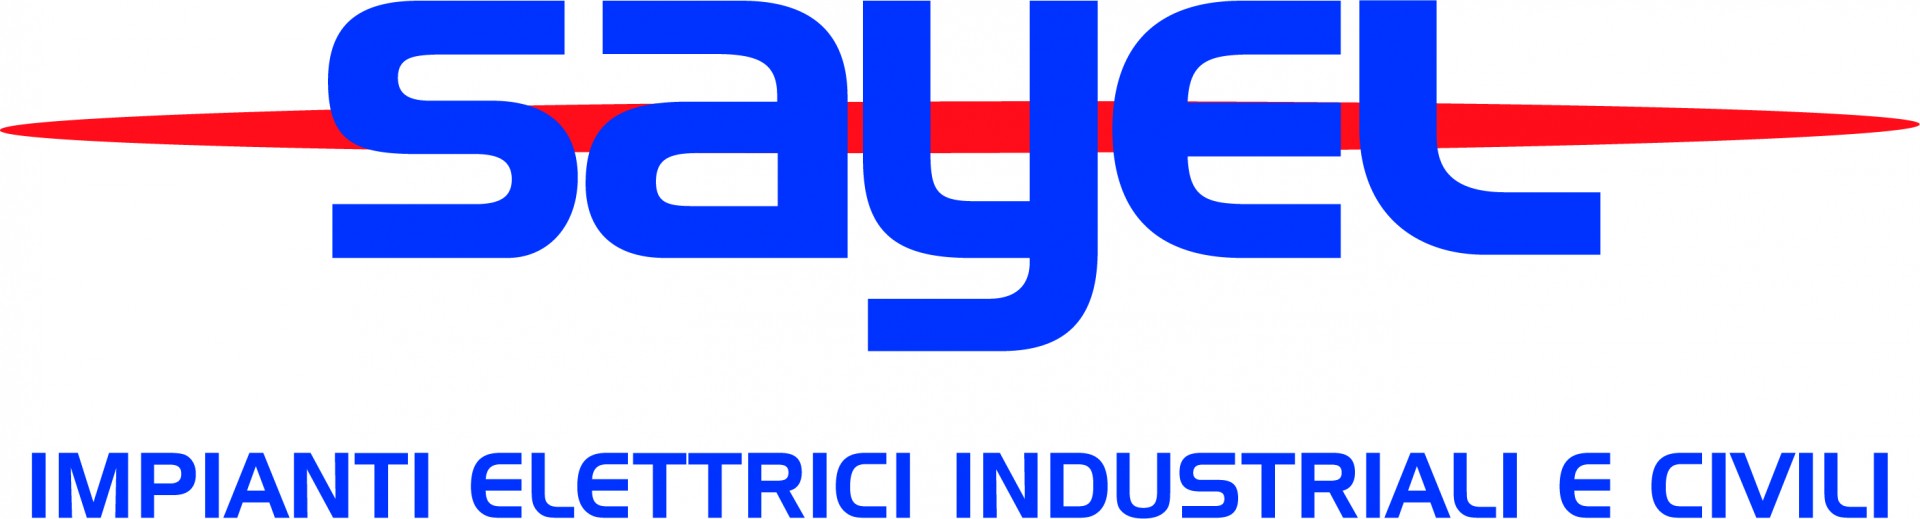 sayel-logo.jpg